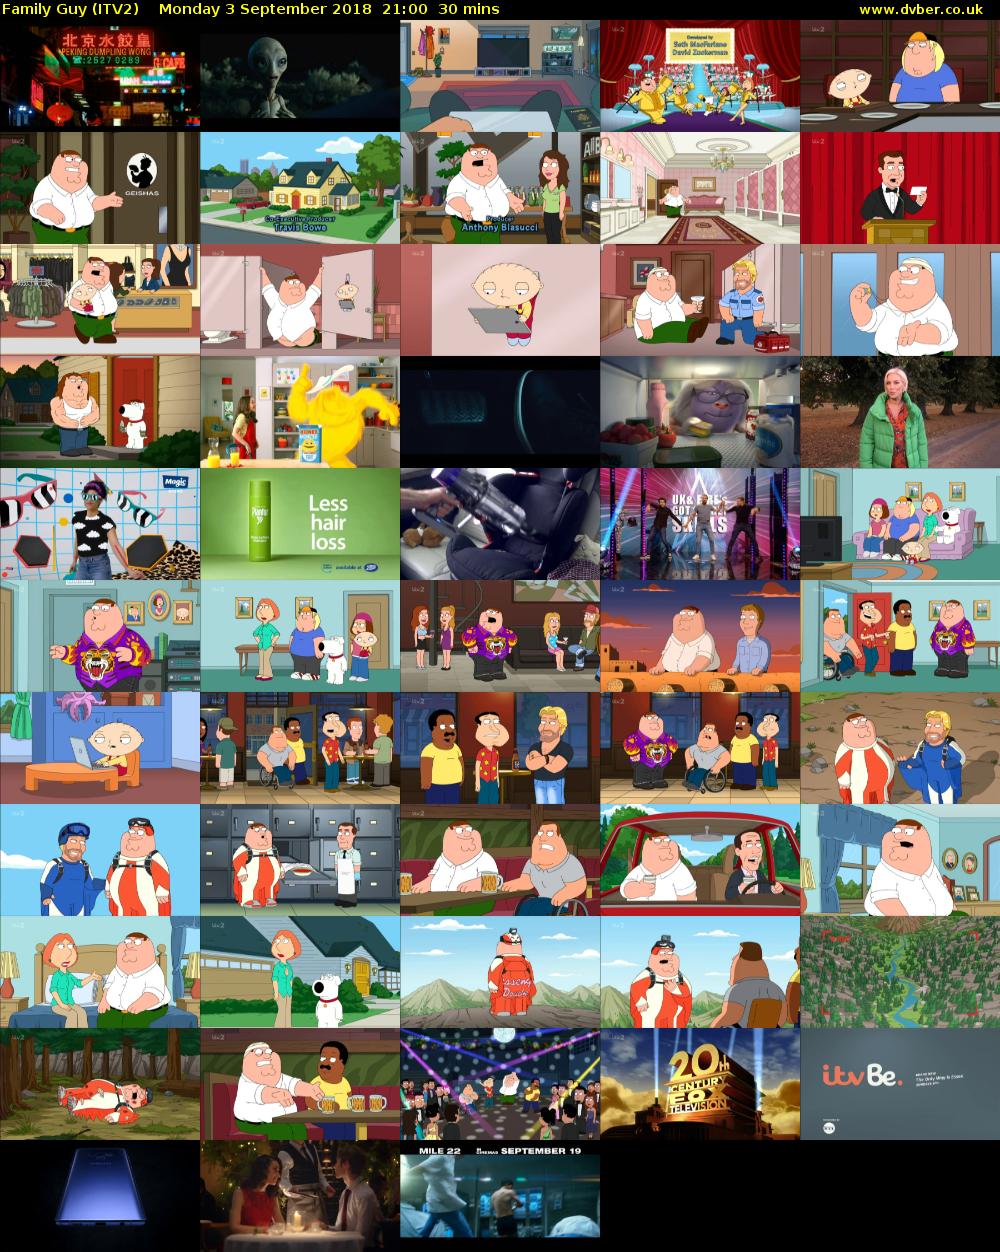 Family Guy (ITV2) Monday 3 September 2018 21:00 - 21:30